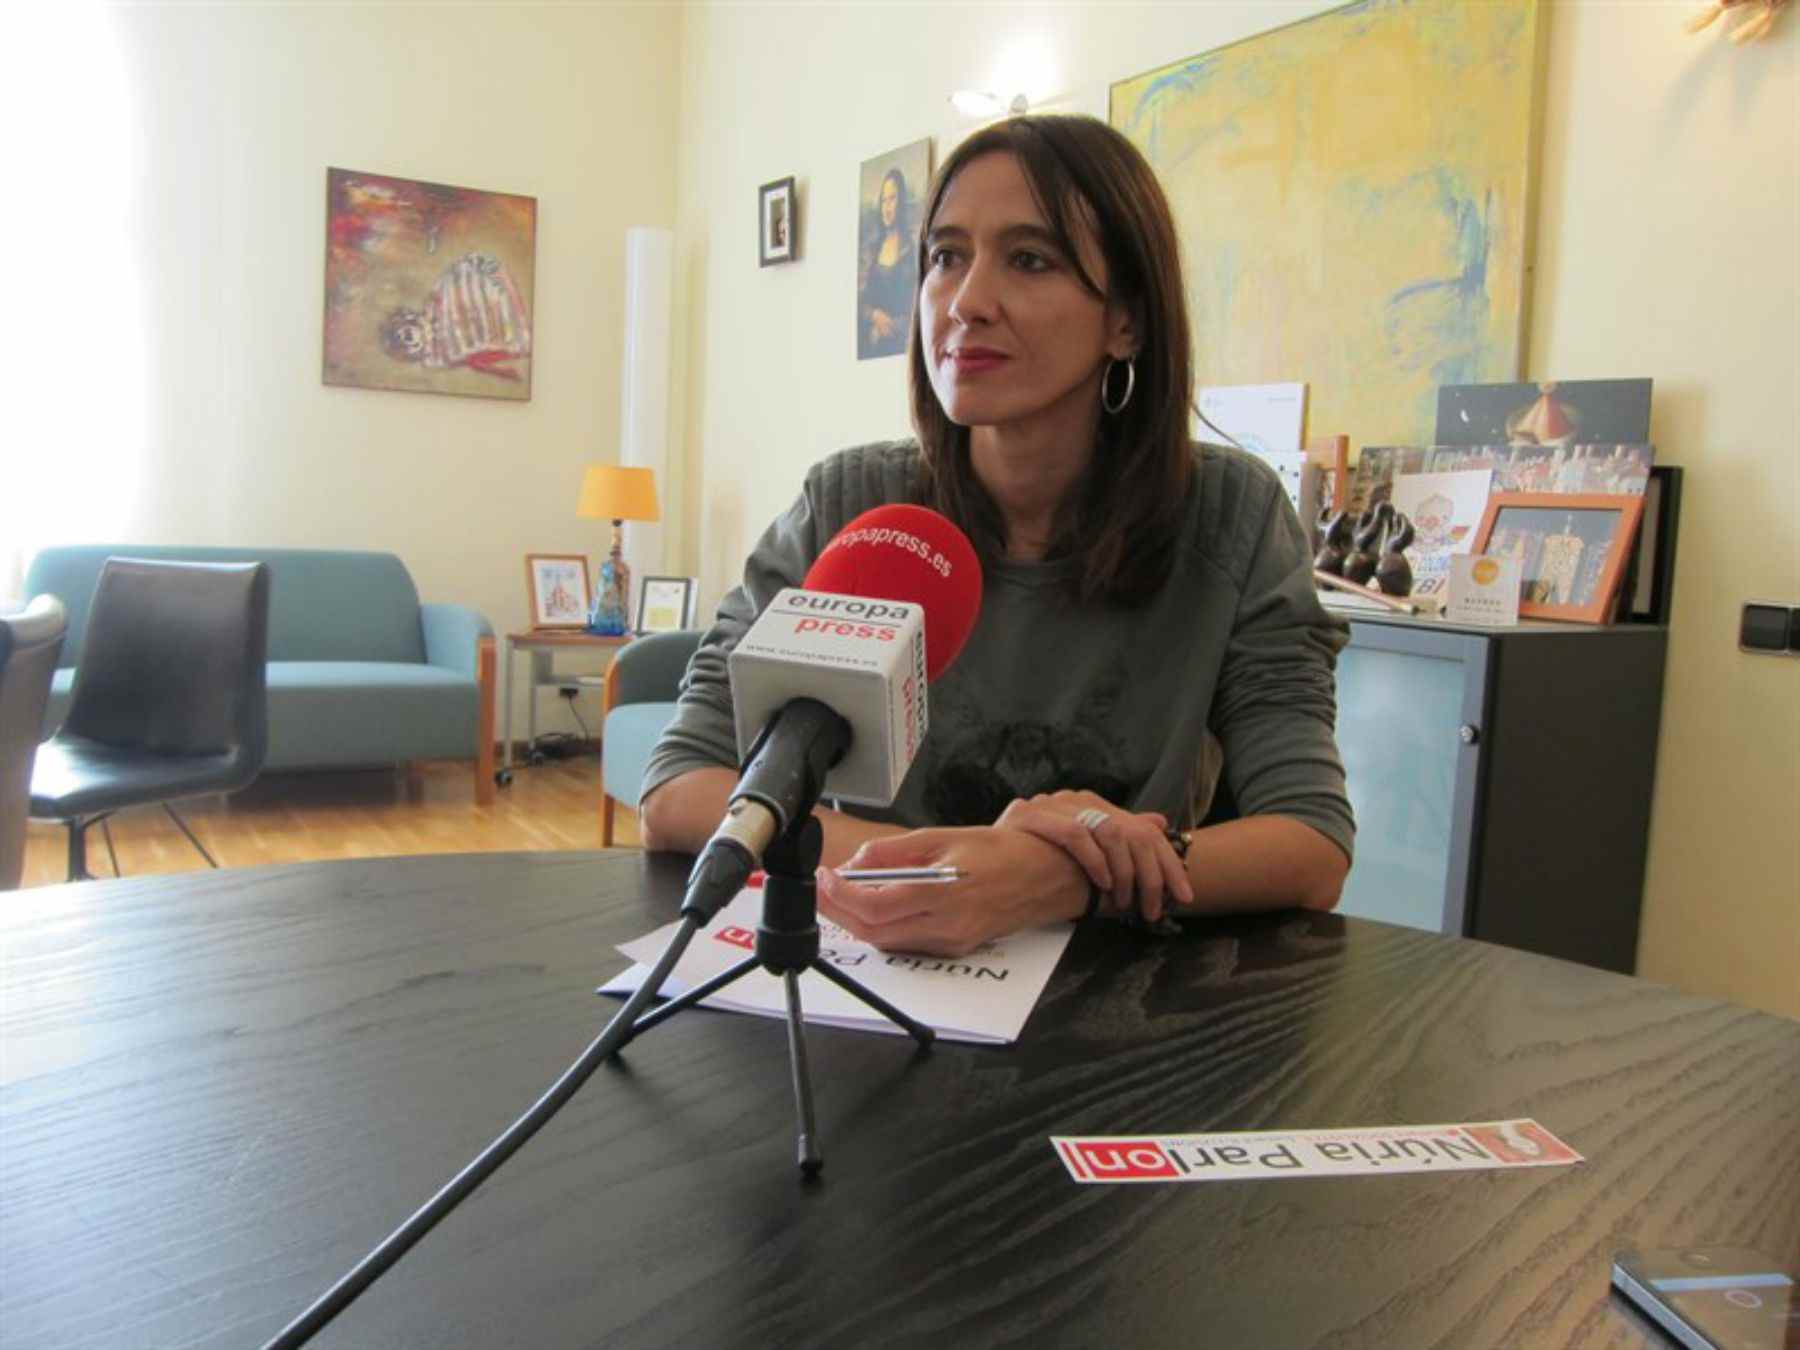 Parlon asegura que la gestora del PSOE "mantendrá su 'no' a Rajoy